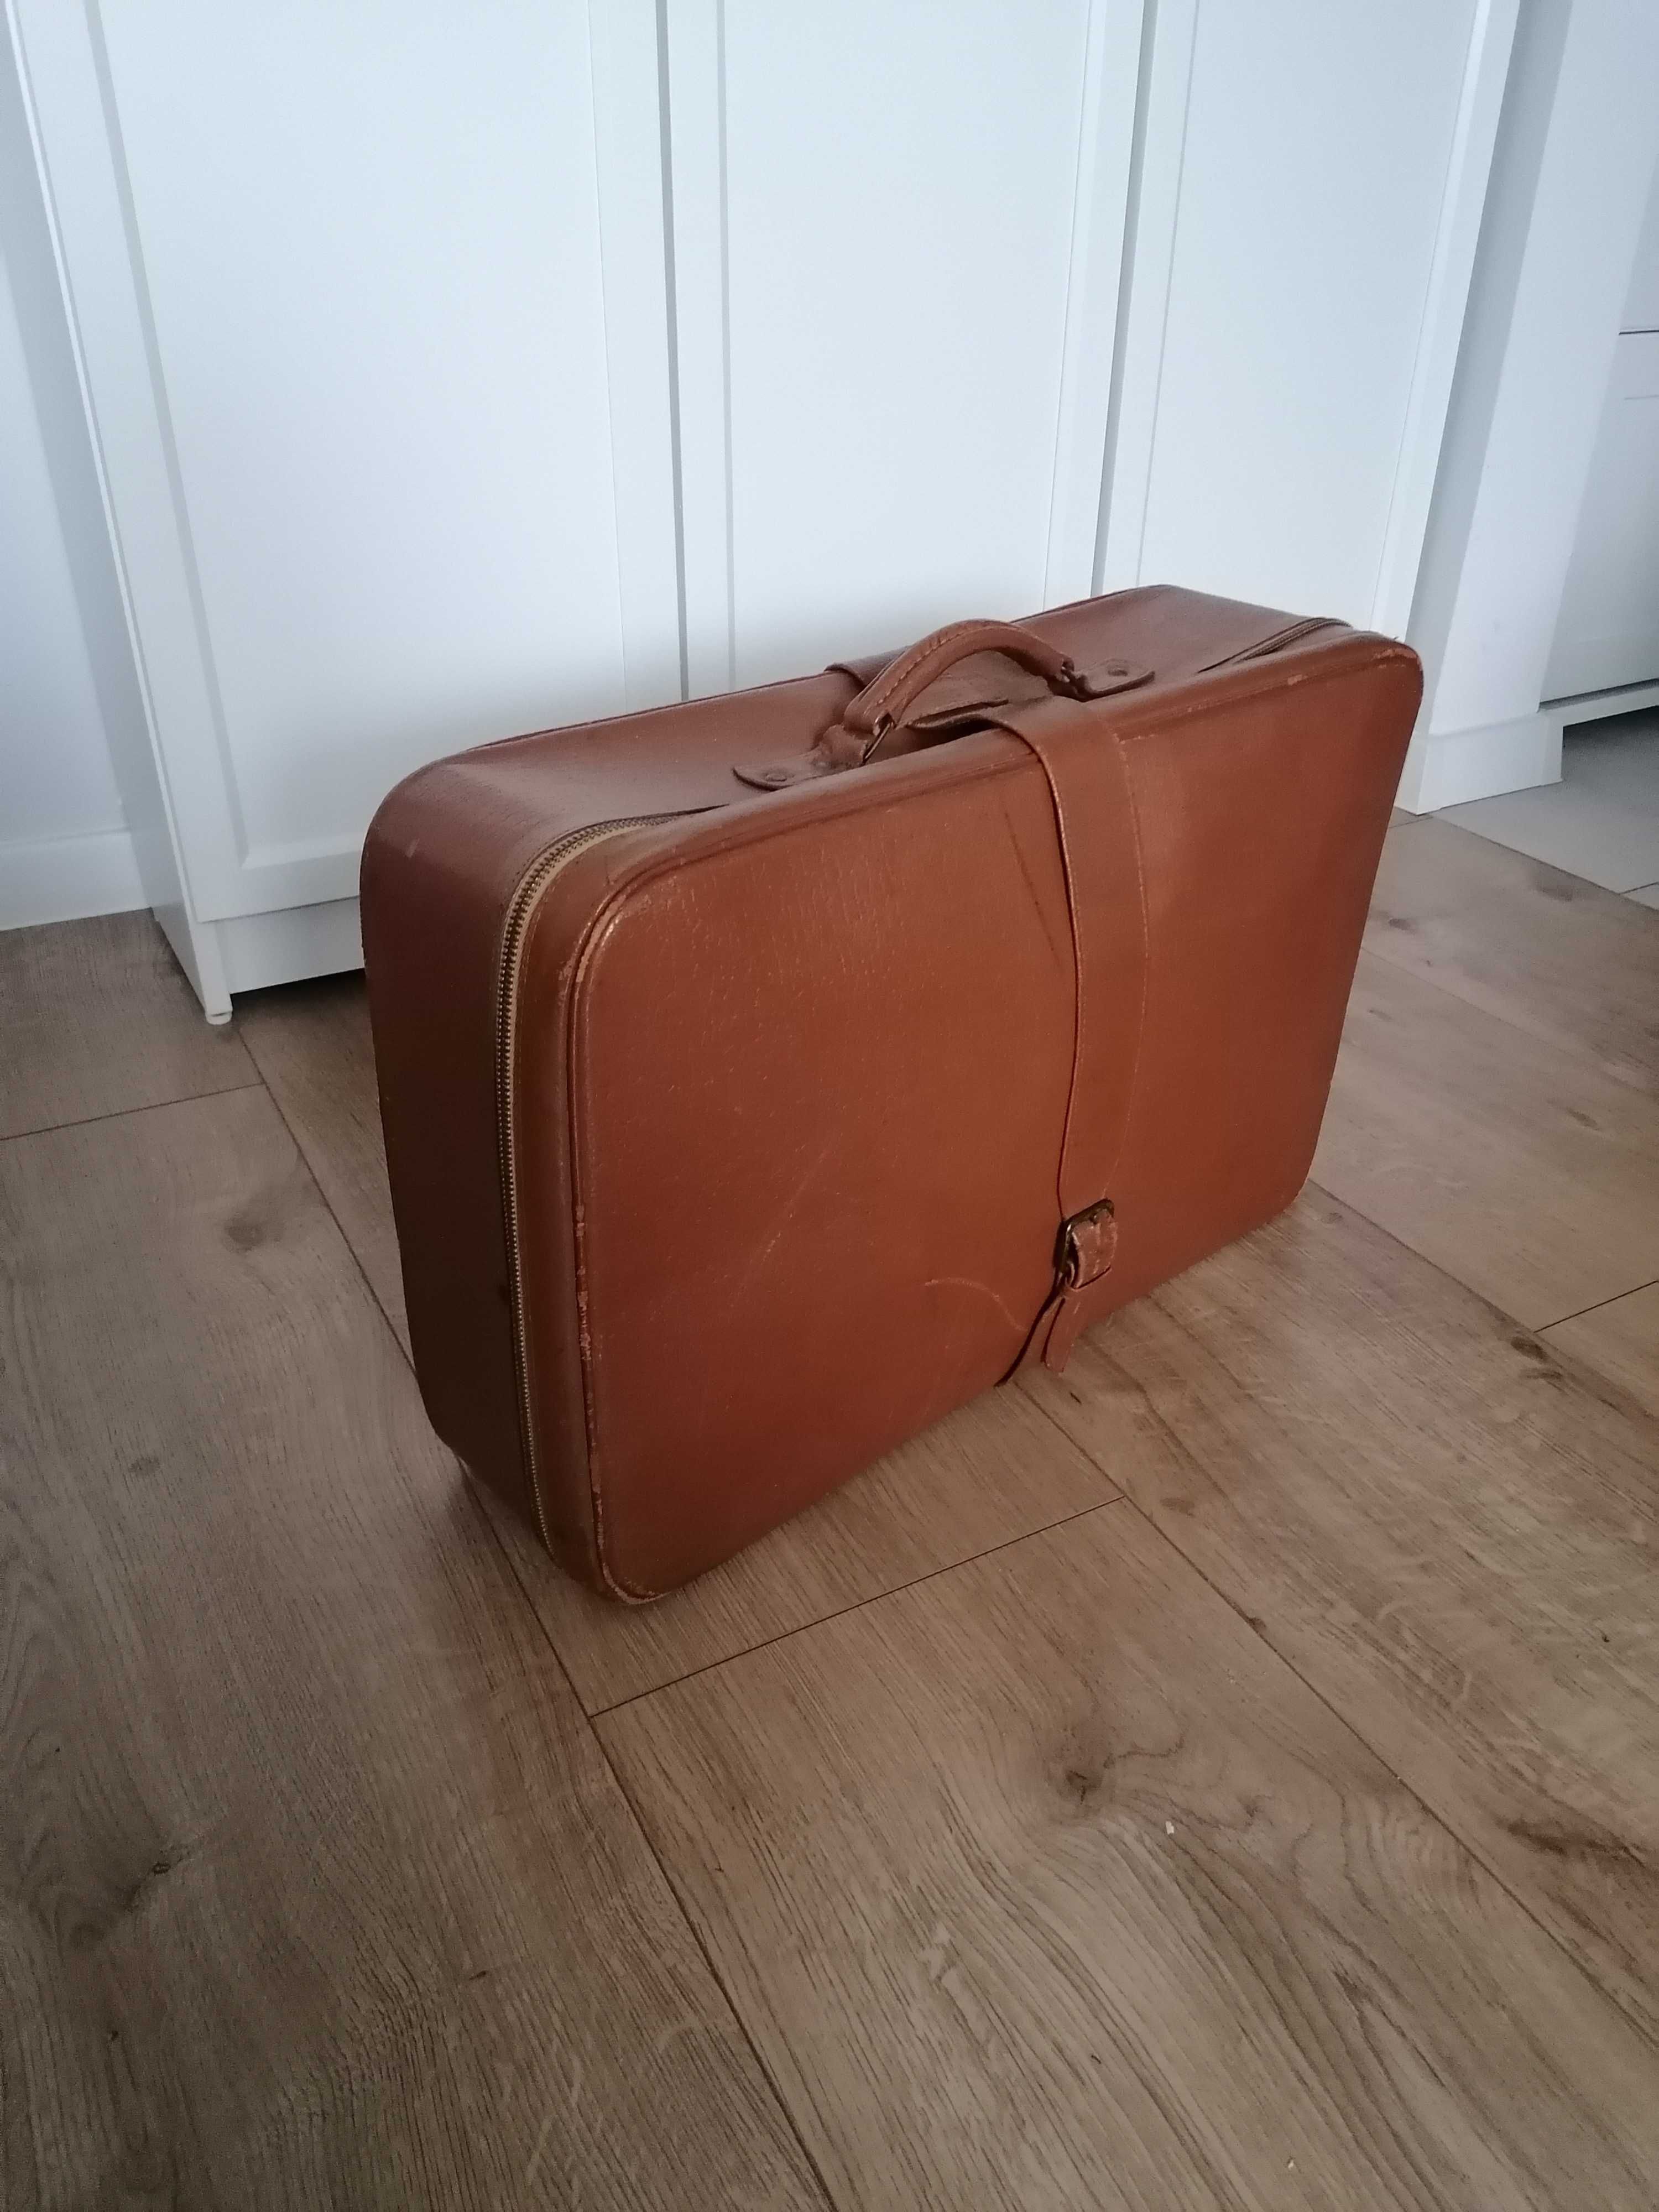 Walizka stara skórzana brązowa kufer vintage prl